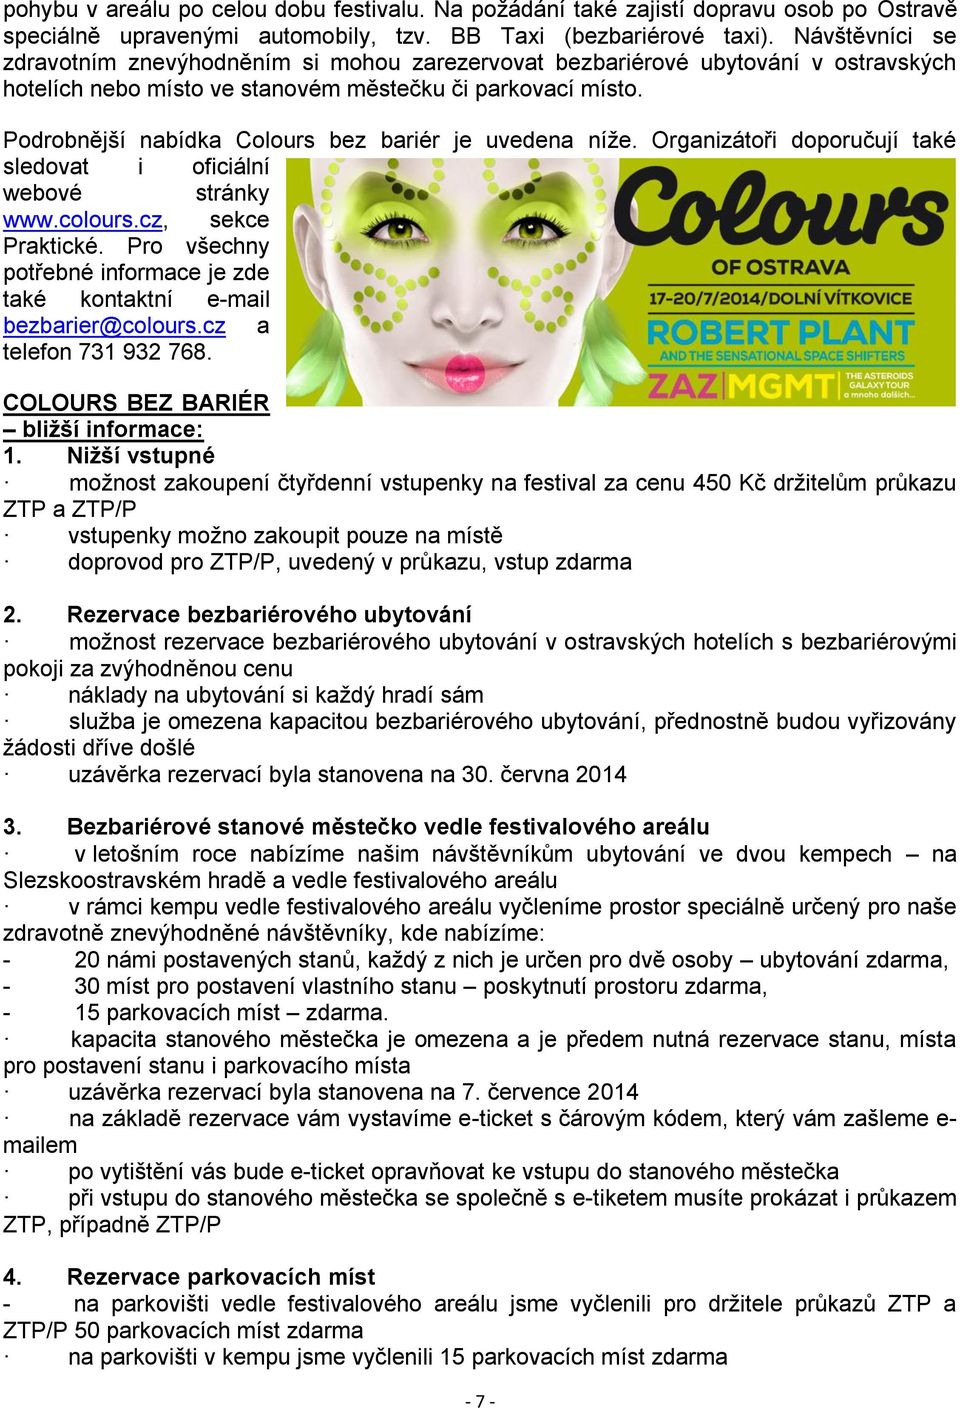 Podrobnější nabídka Colours bez bariér je uvedena níže. Organizátoři doporučují také sledovat i oficiální webové stránky www.colours.cz, sekce Praktické.